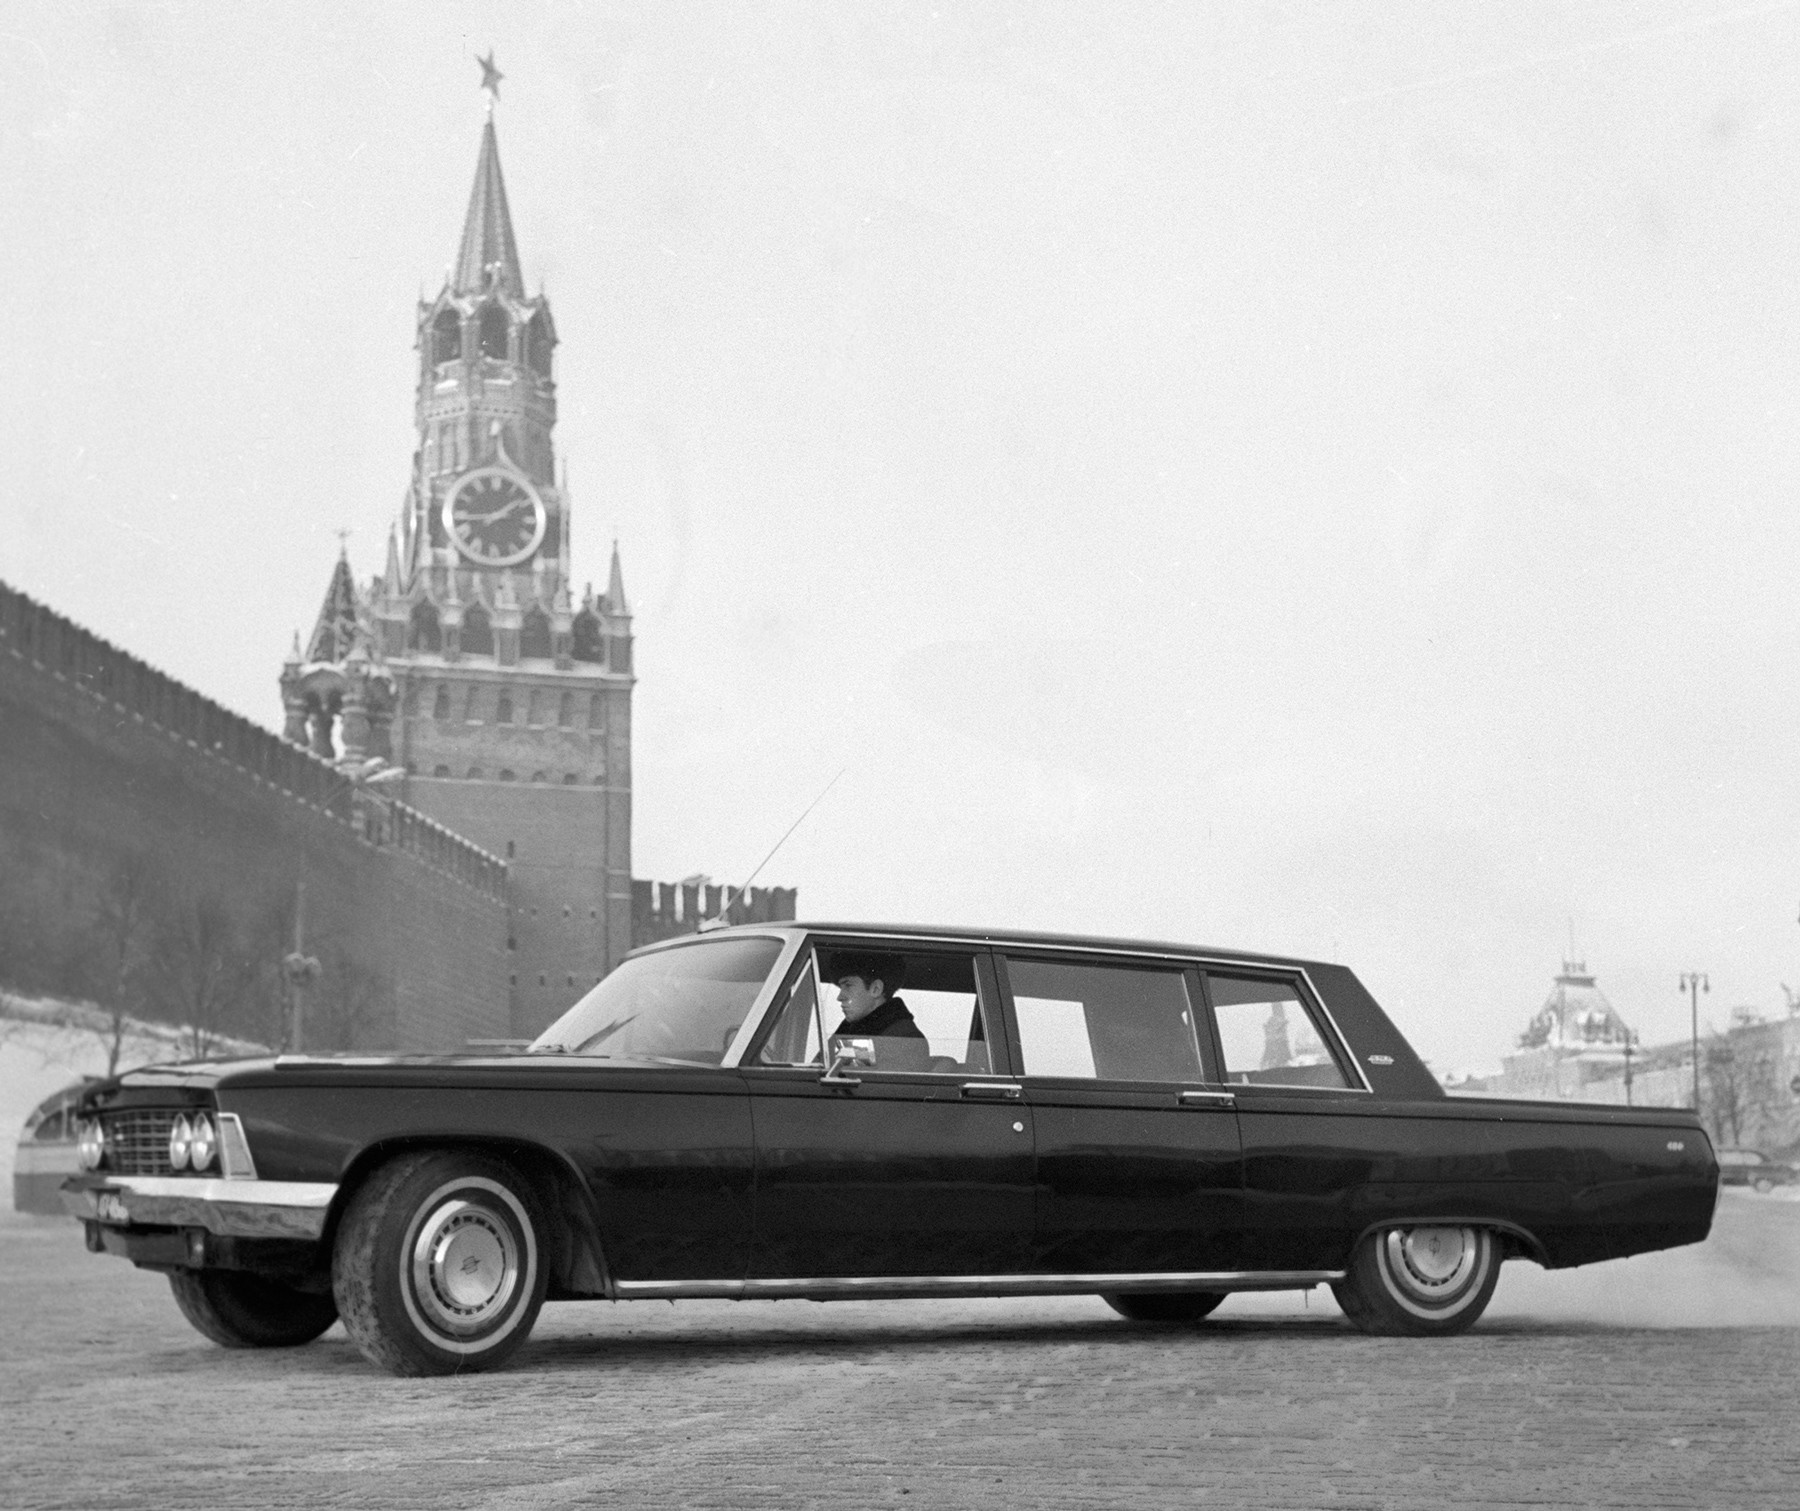 Совјетски автомобил високе класе ЗИЛ-114, који се производио у московској фабрици аутомобила „Лихачов“, на Црвеном тргу, Москва 1968.